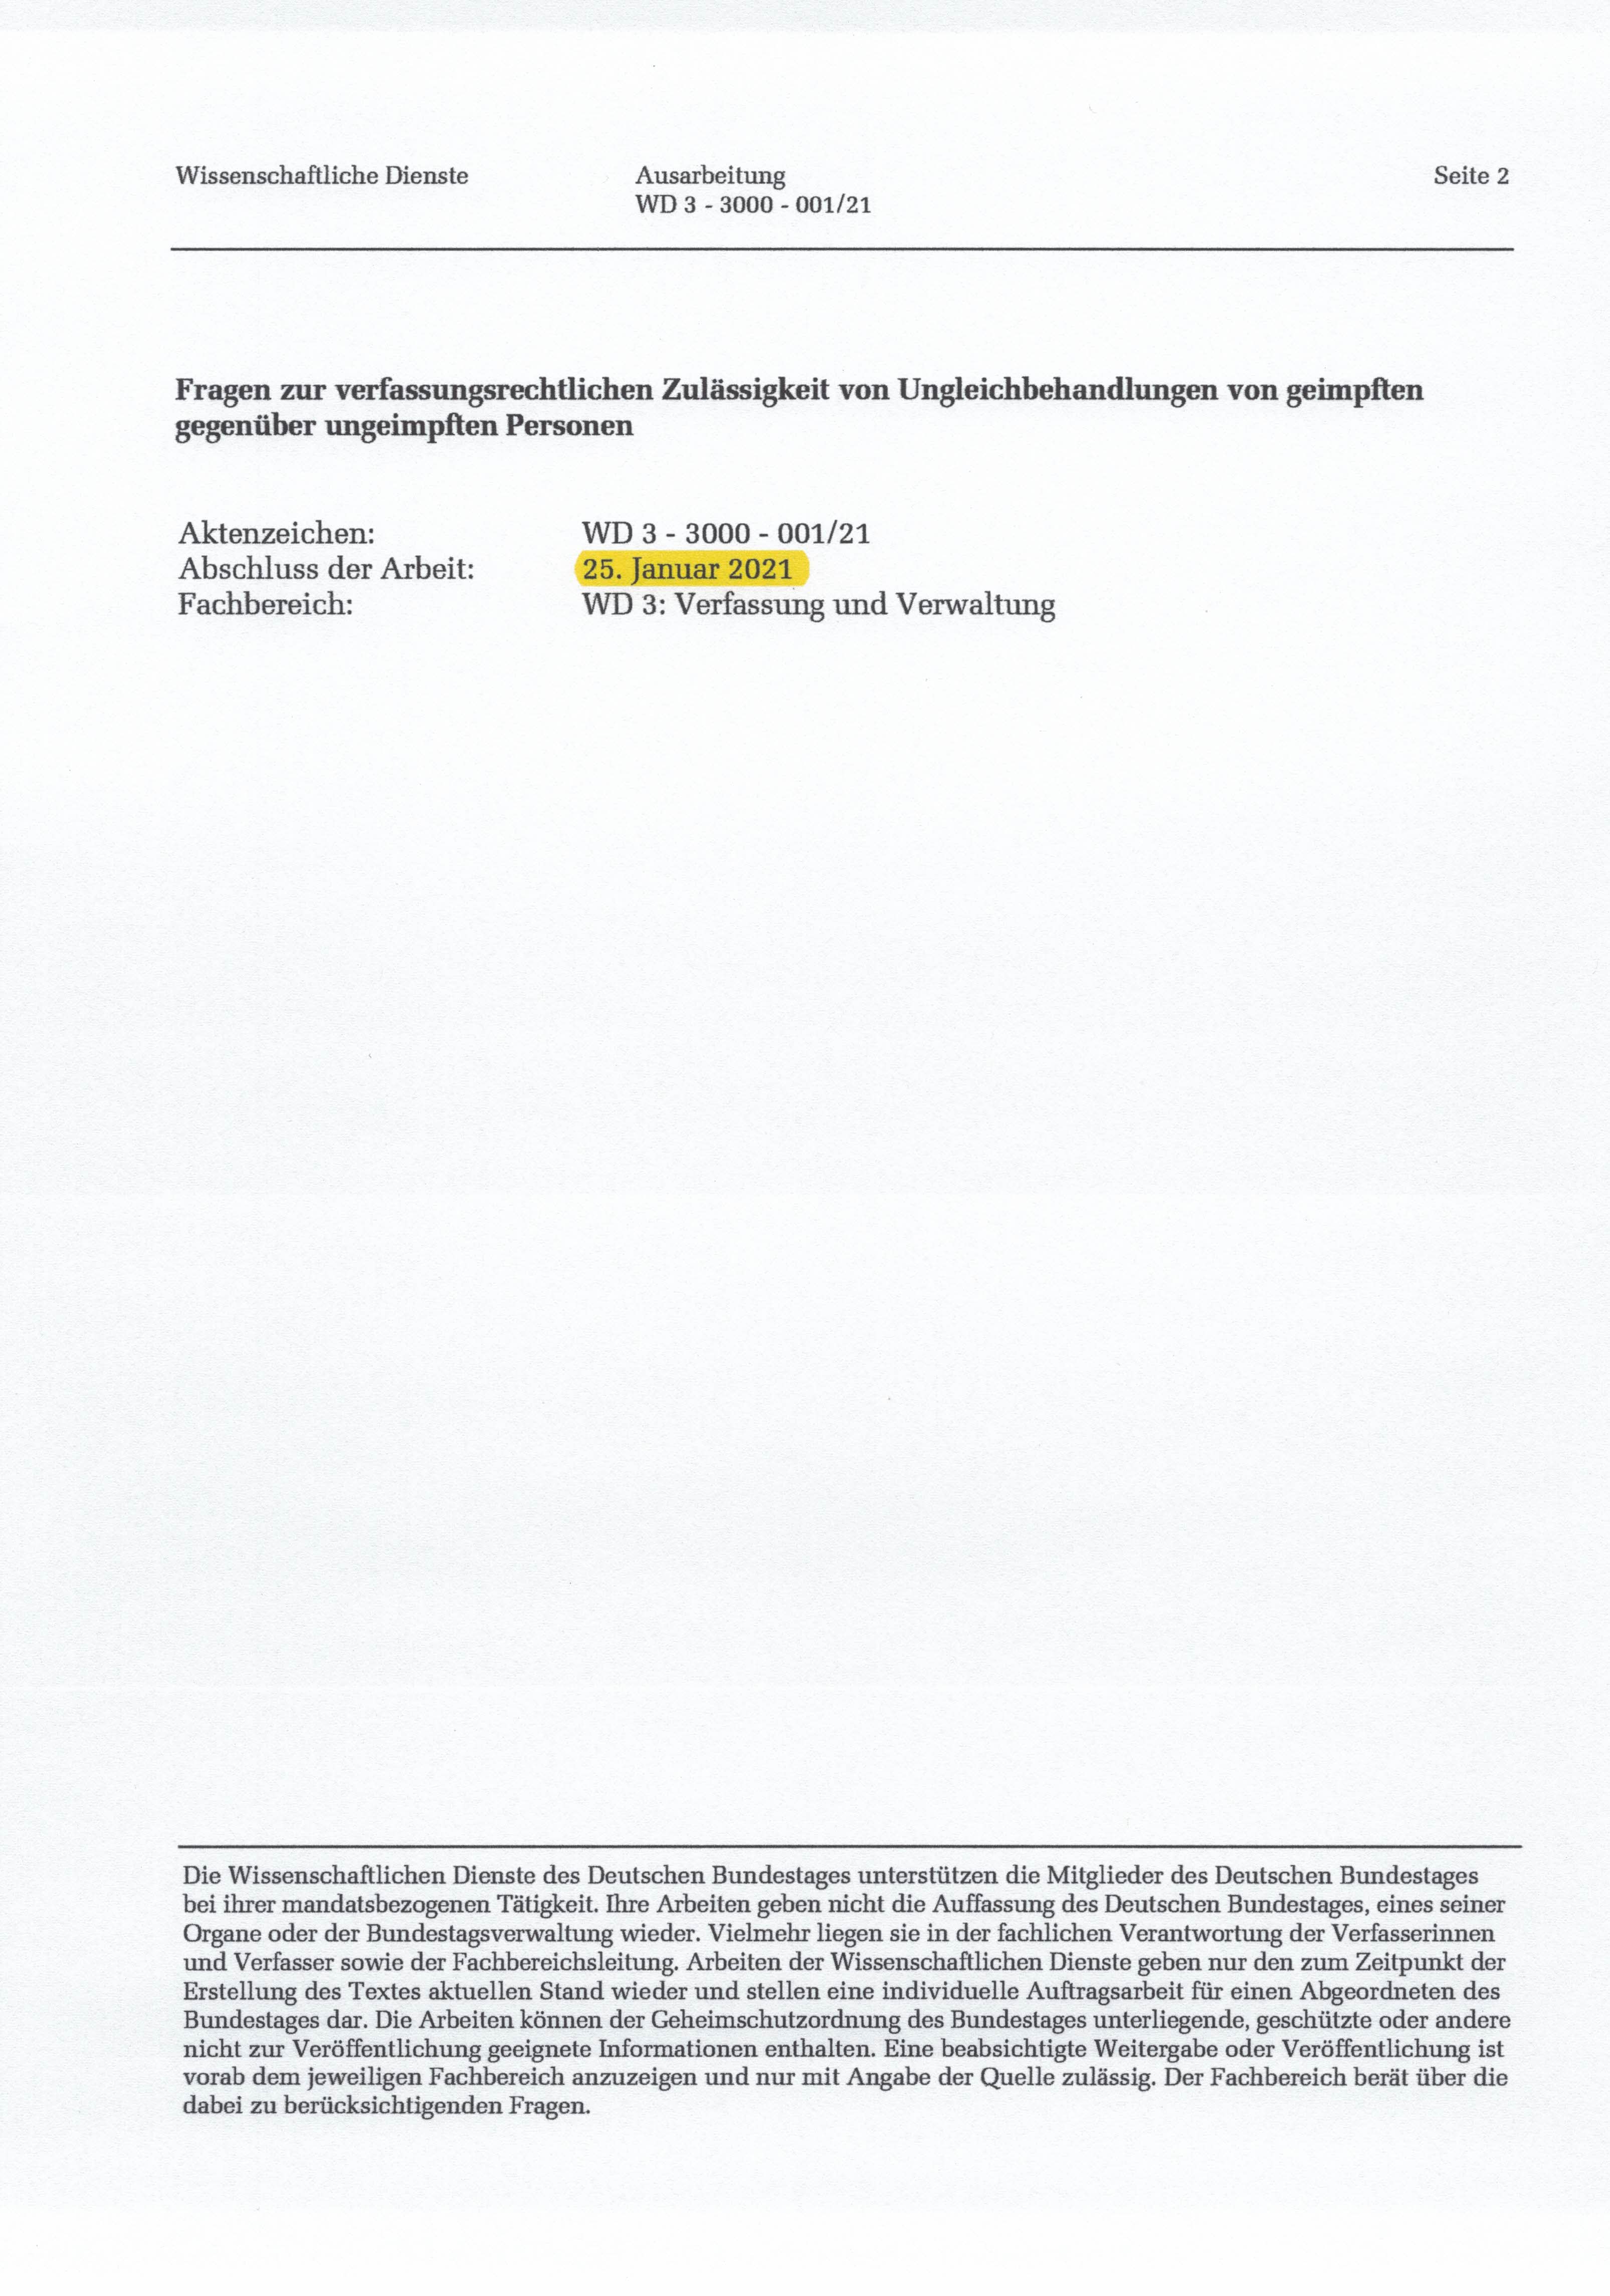 2021 09 06 Ausarbeitung Bundestag Ungleichbehandlung geimpfte vs ungeimpfte Auszge 0001